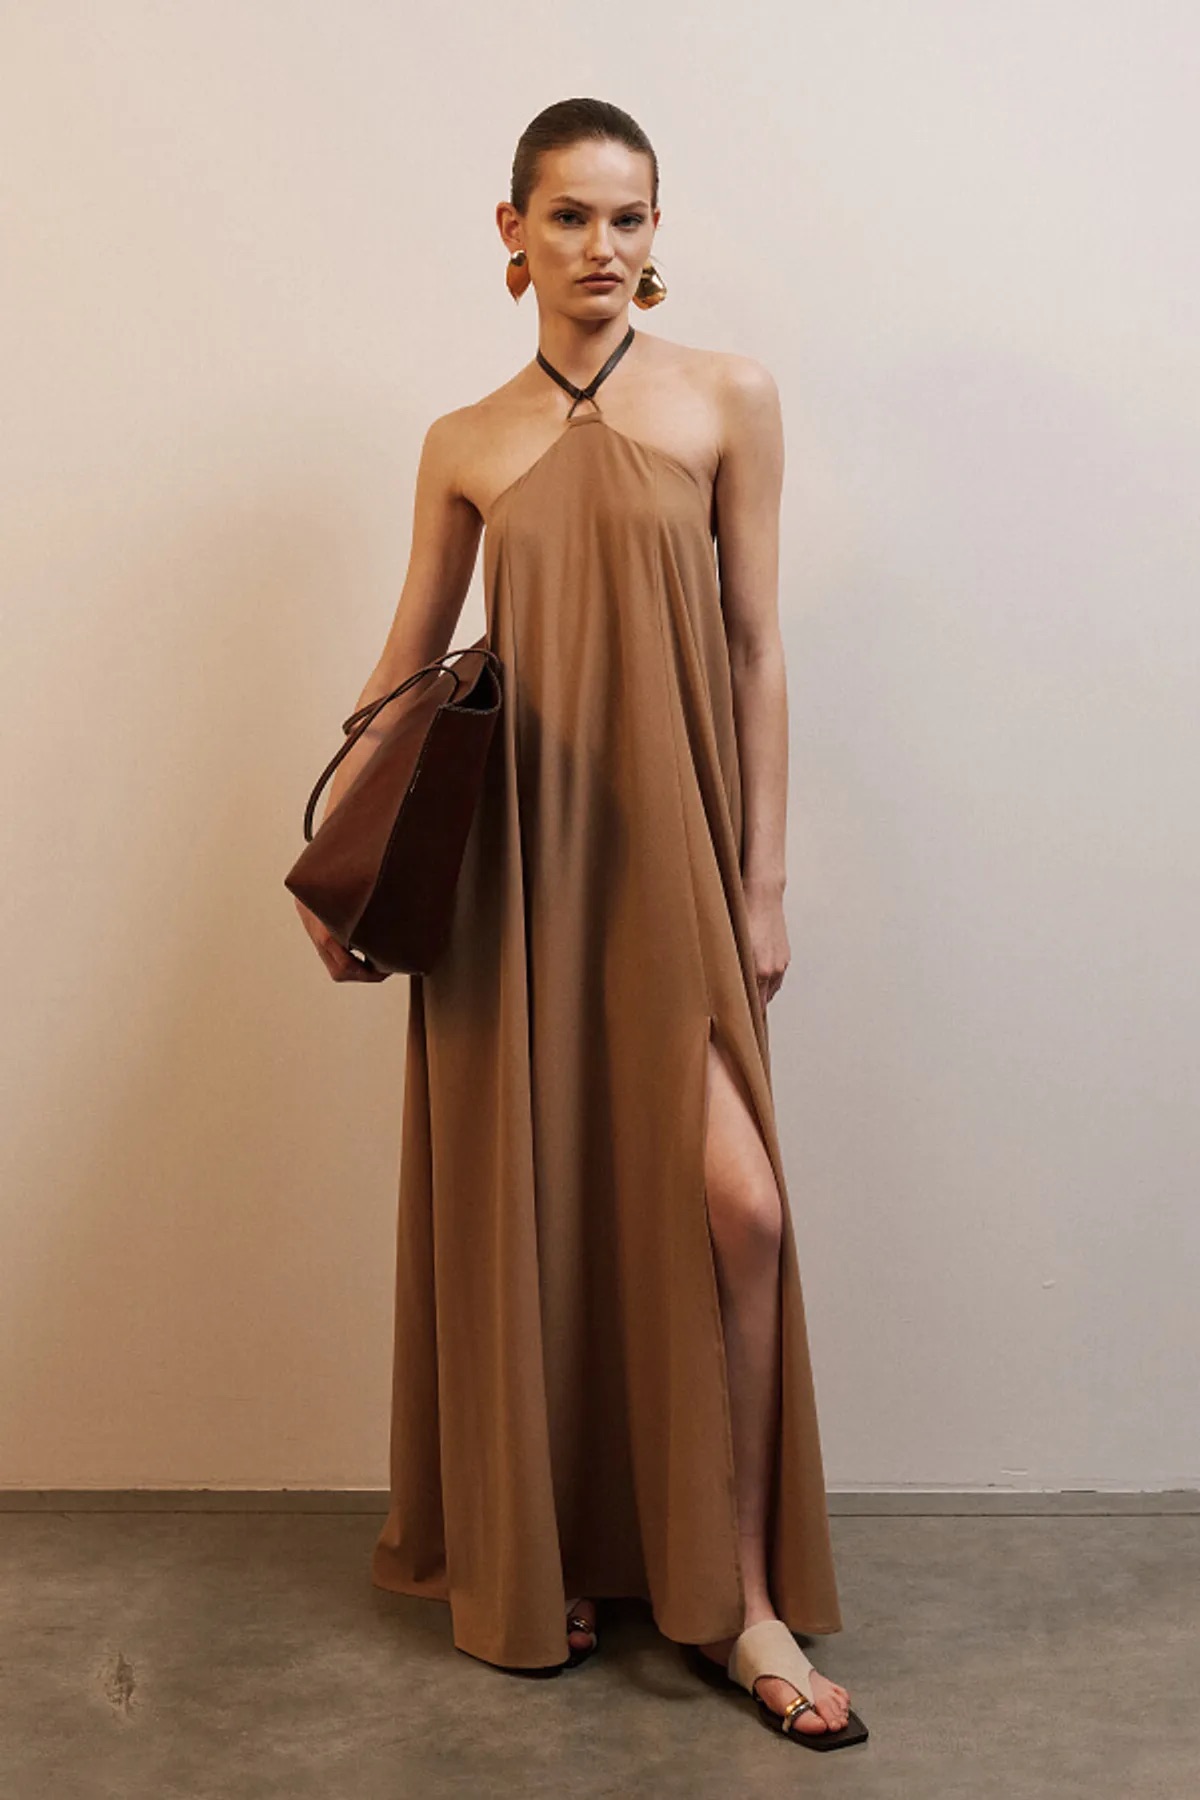 Девушка стоит в длинном, струящемся платье Lsd.clothing с открытой спиной и соблазнительными разрезами.